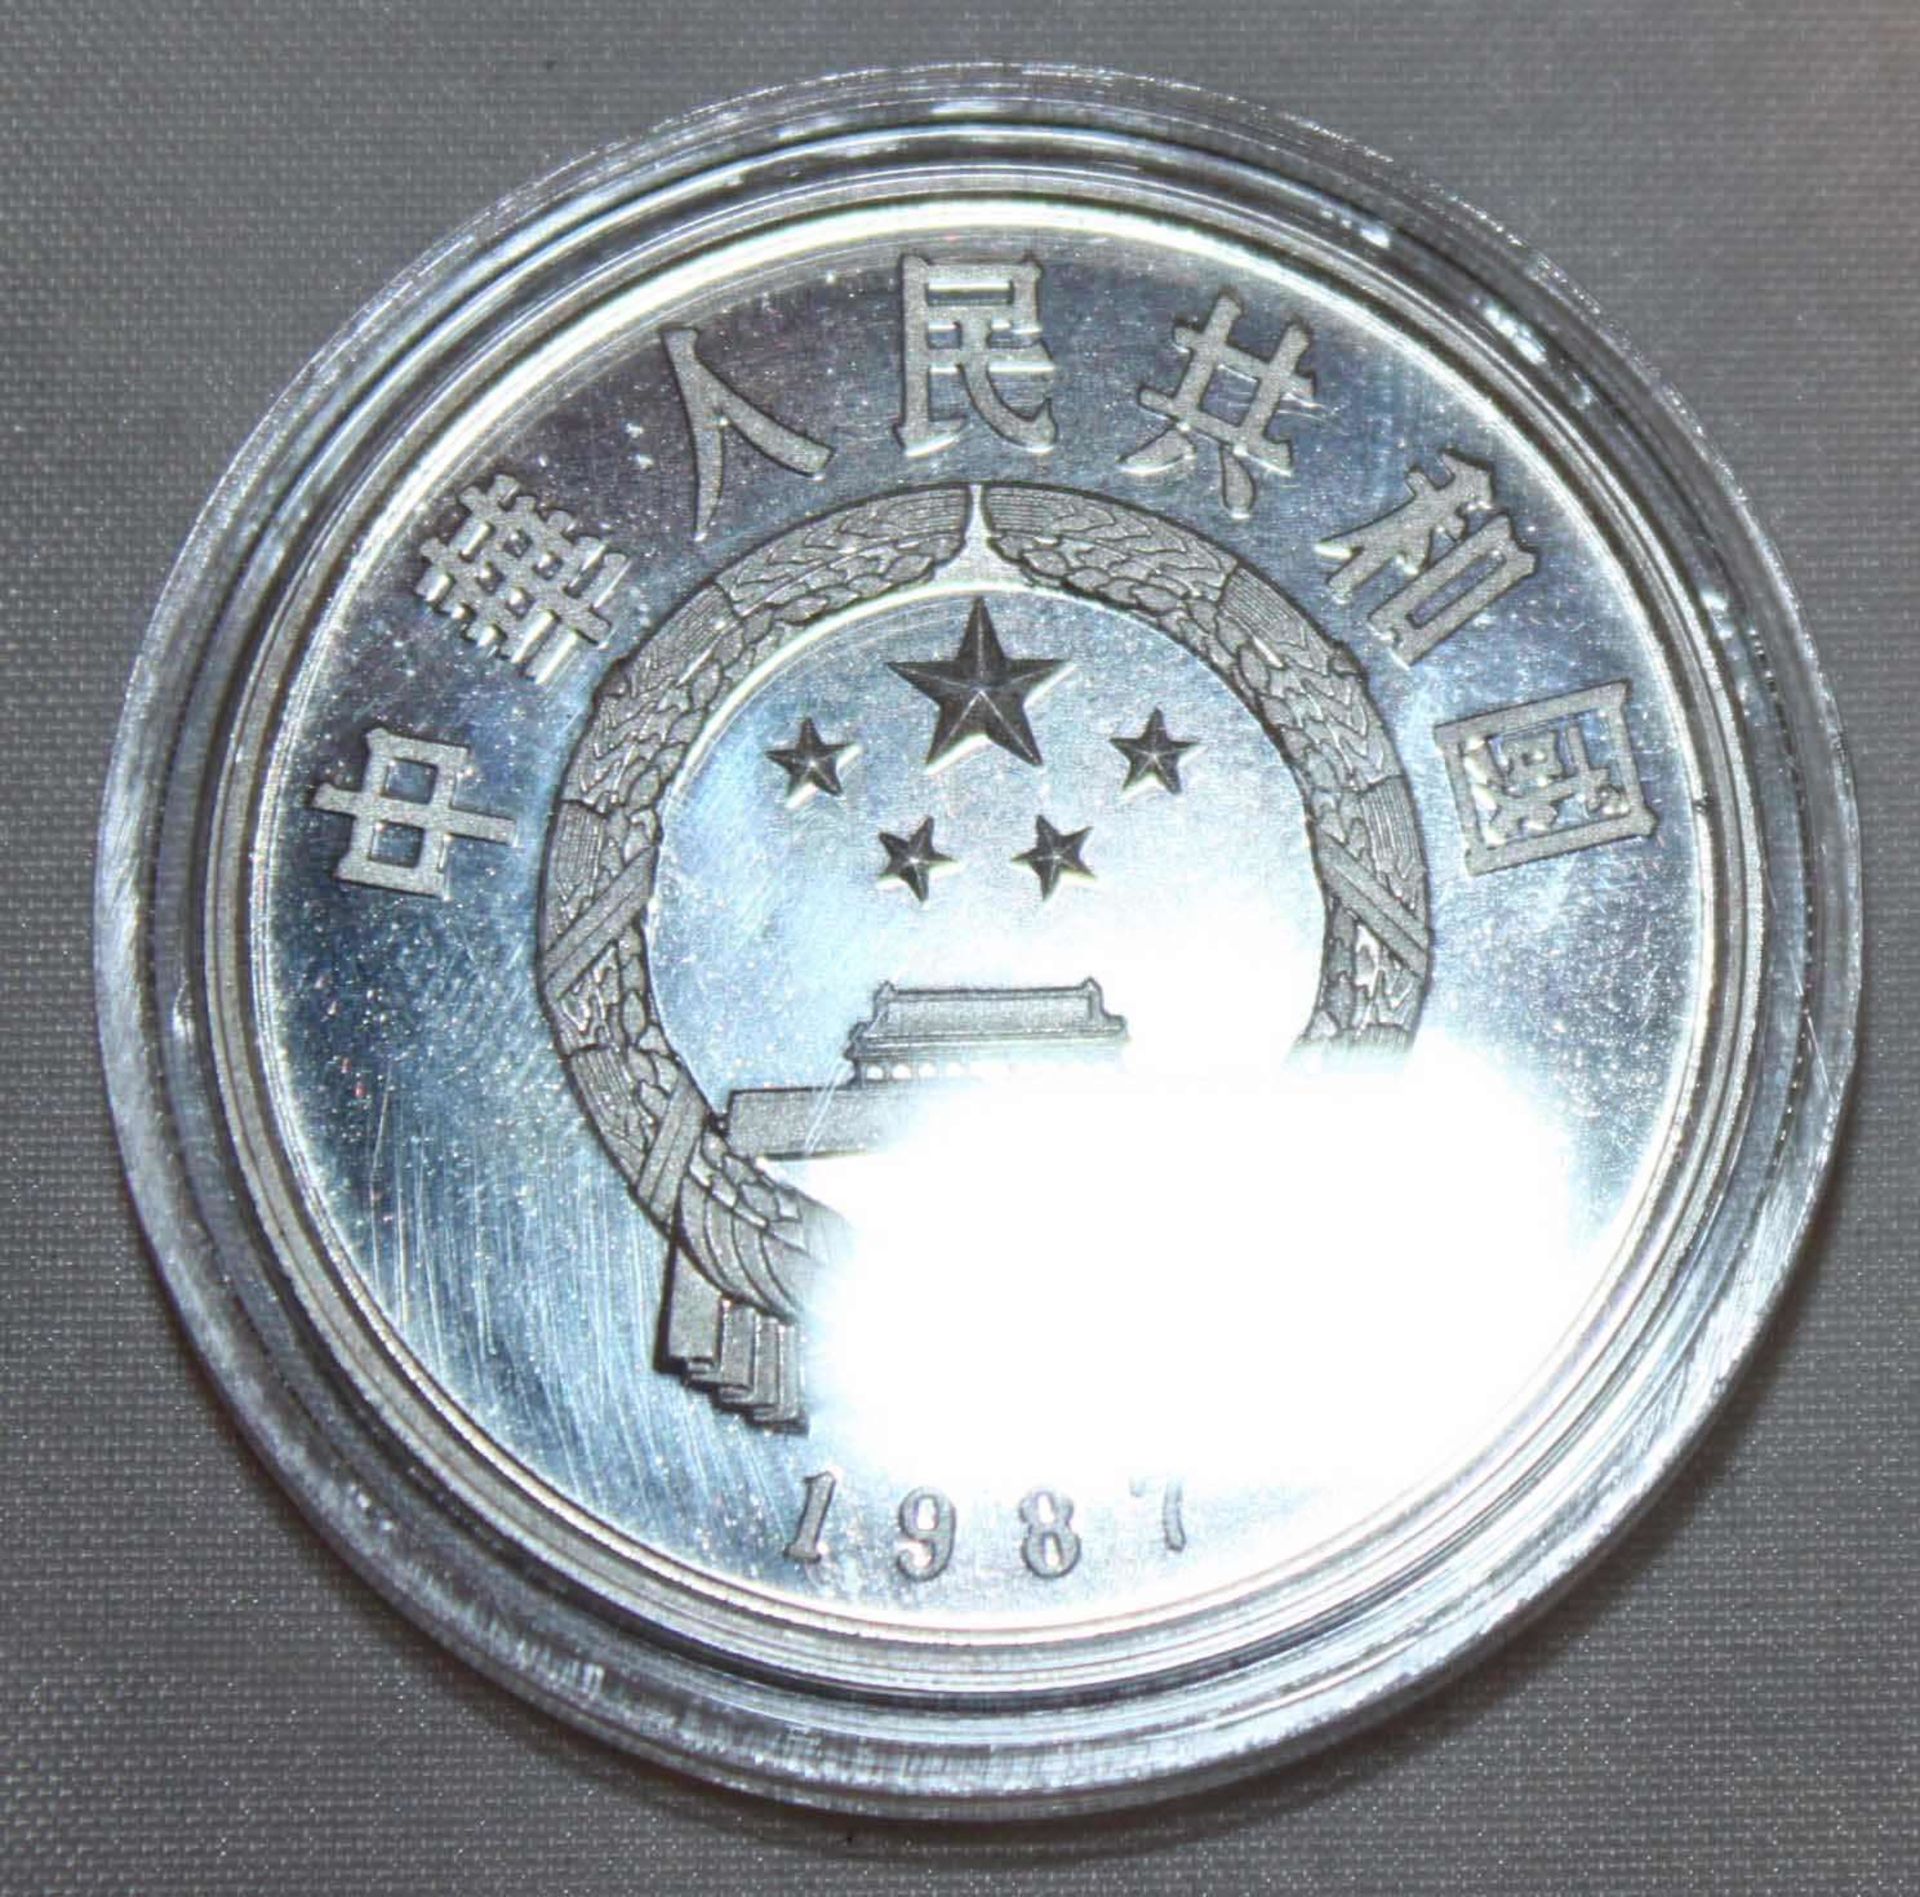 China 1987, 5 Yuan - Silbermünze "Du Fu". Silber 900. Gewicht: 22,2 gr.. In Kapsel. Erhaltung: PP. - Bild 2 aus 3